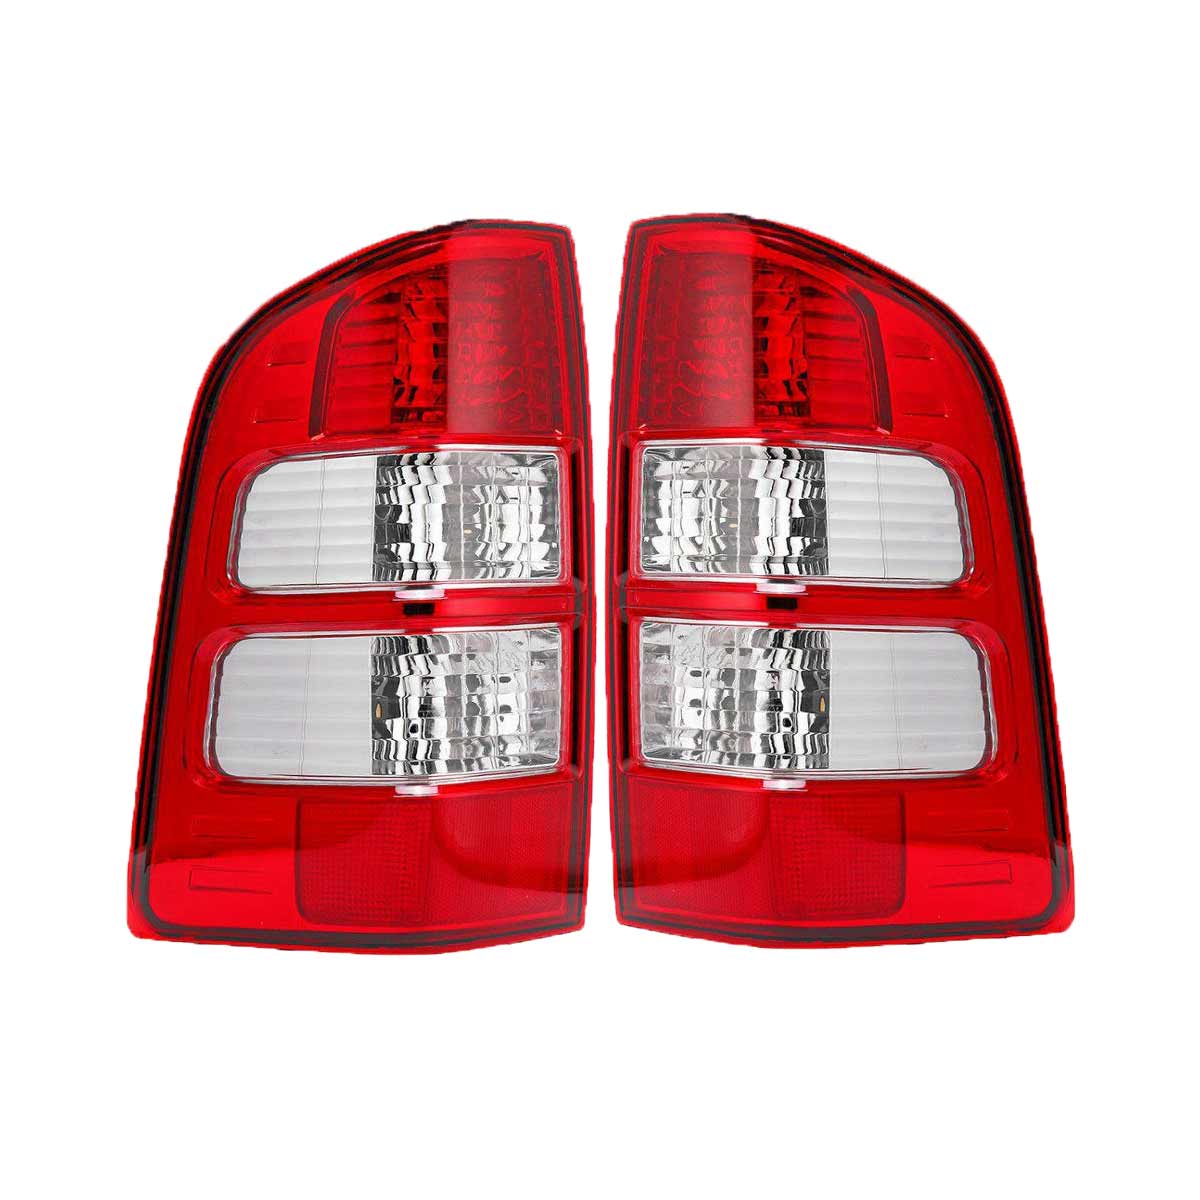 

2Pcs Авто Правый / Левый LED Задний фонарь Тормоз Лампа Для Ford Ranger Thunder Pickup Truck 2006-2011